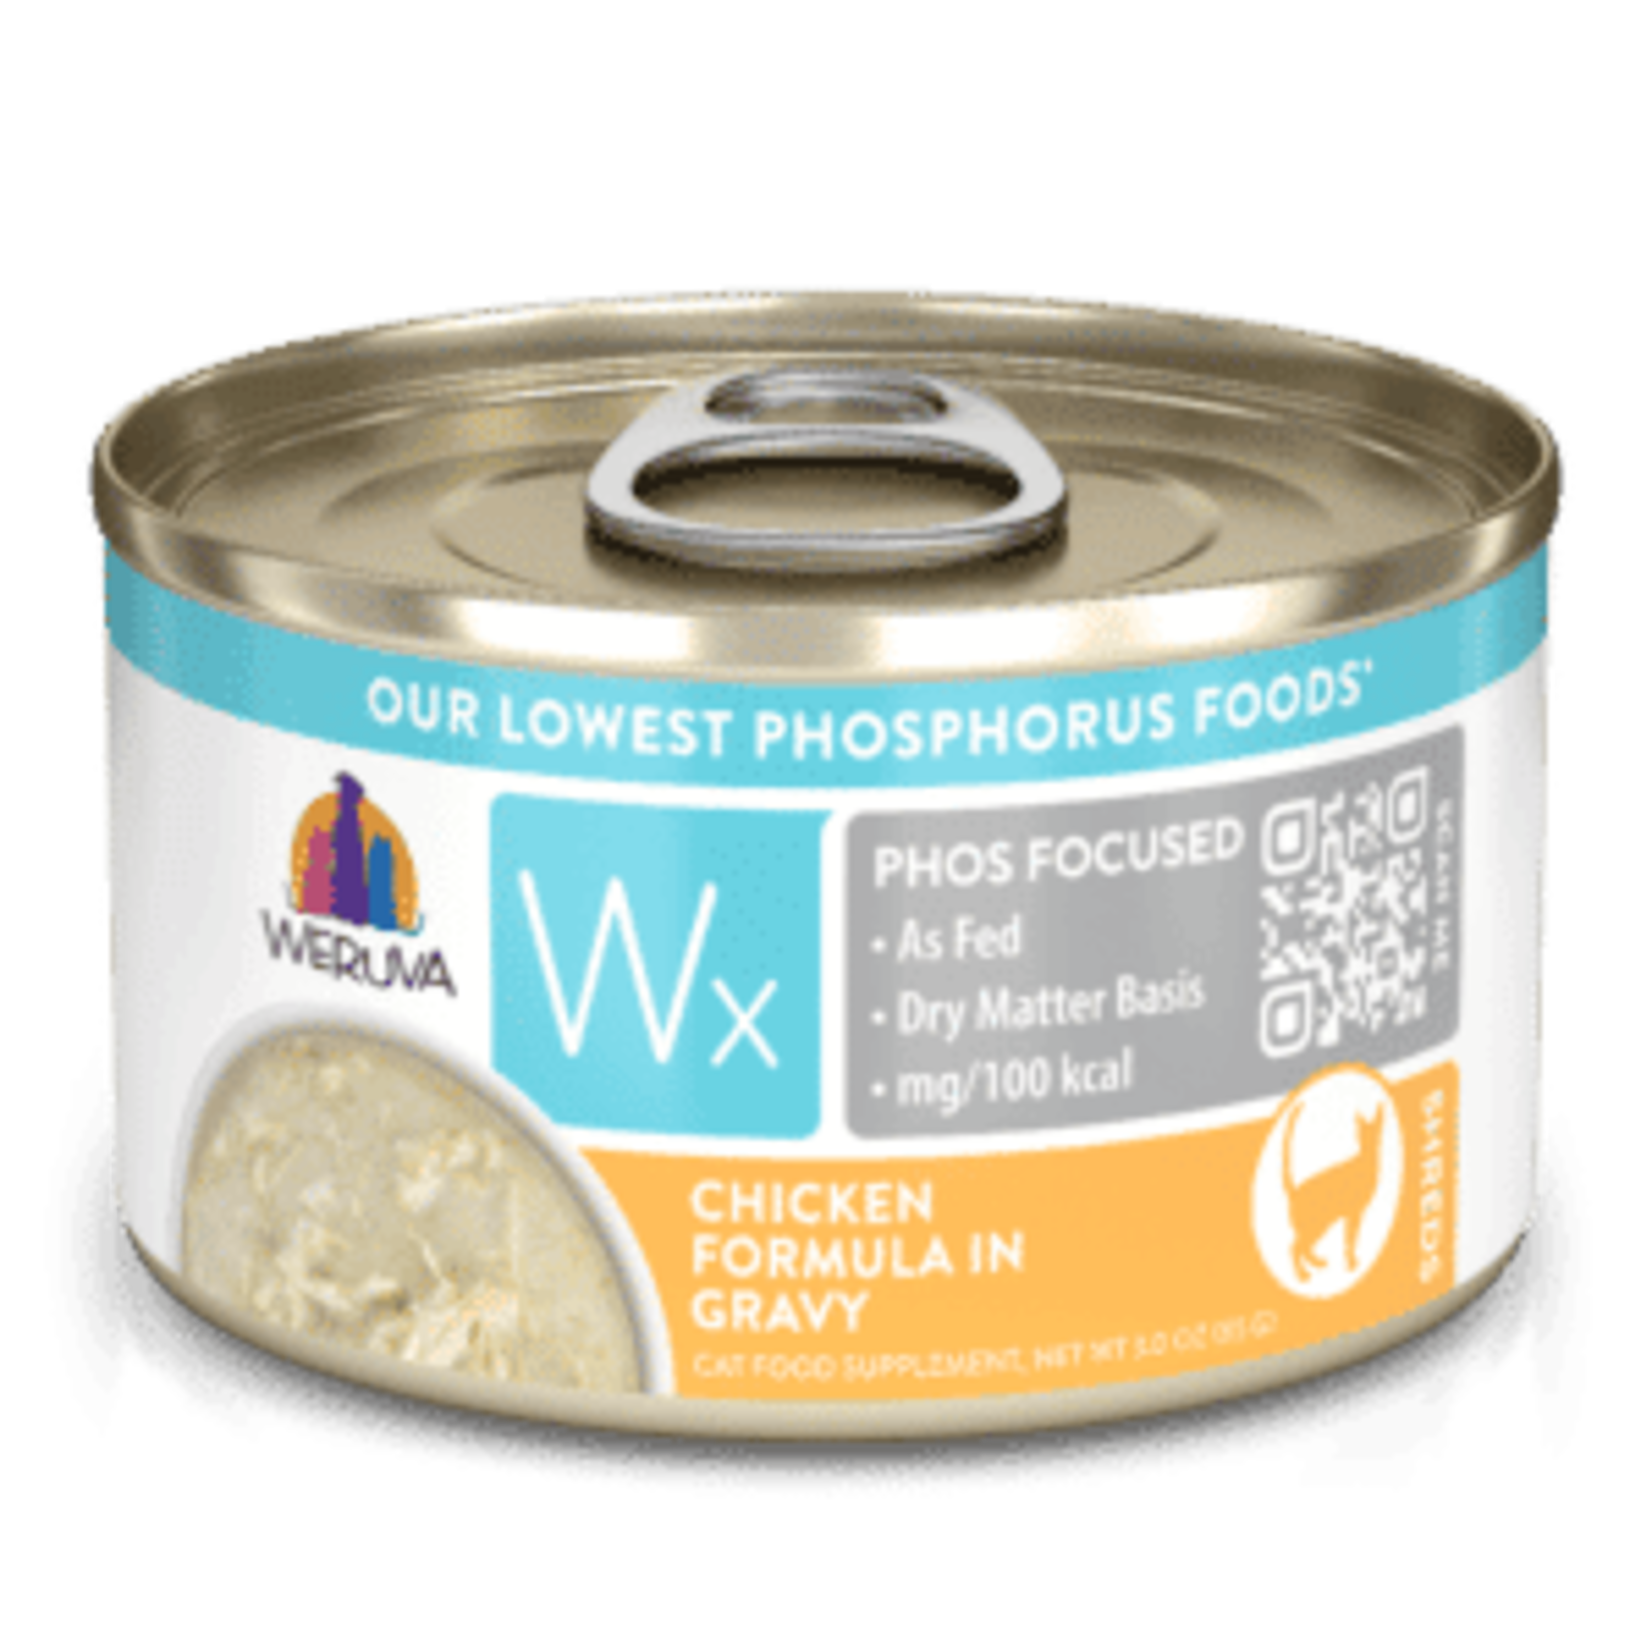 Weruva Weruva Wet Cat Food Wx Low Phosphorus Chicken Formula in Gravy 3oz Can